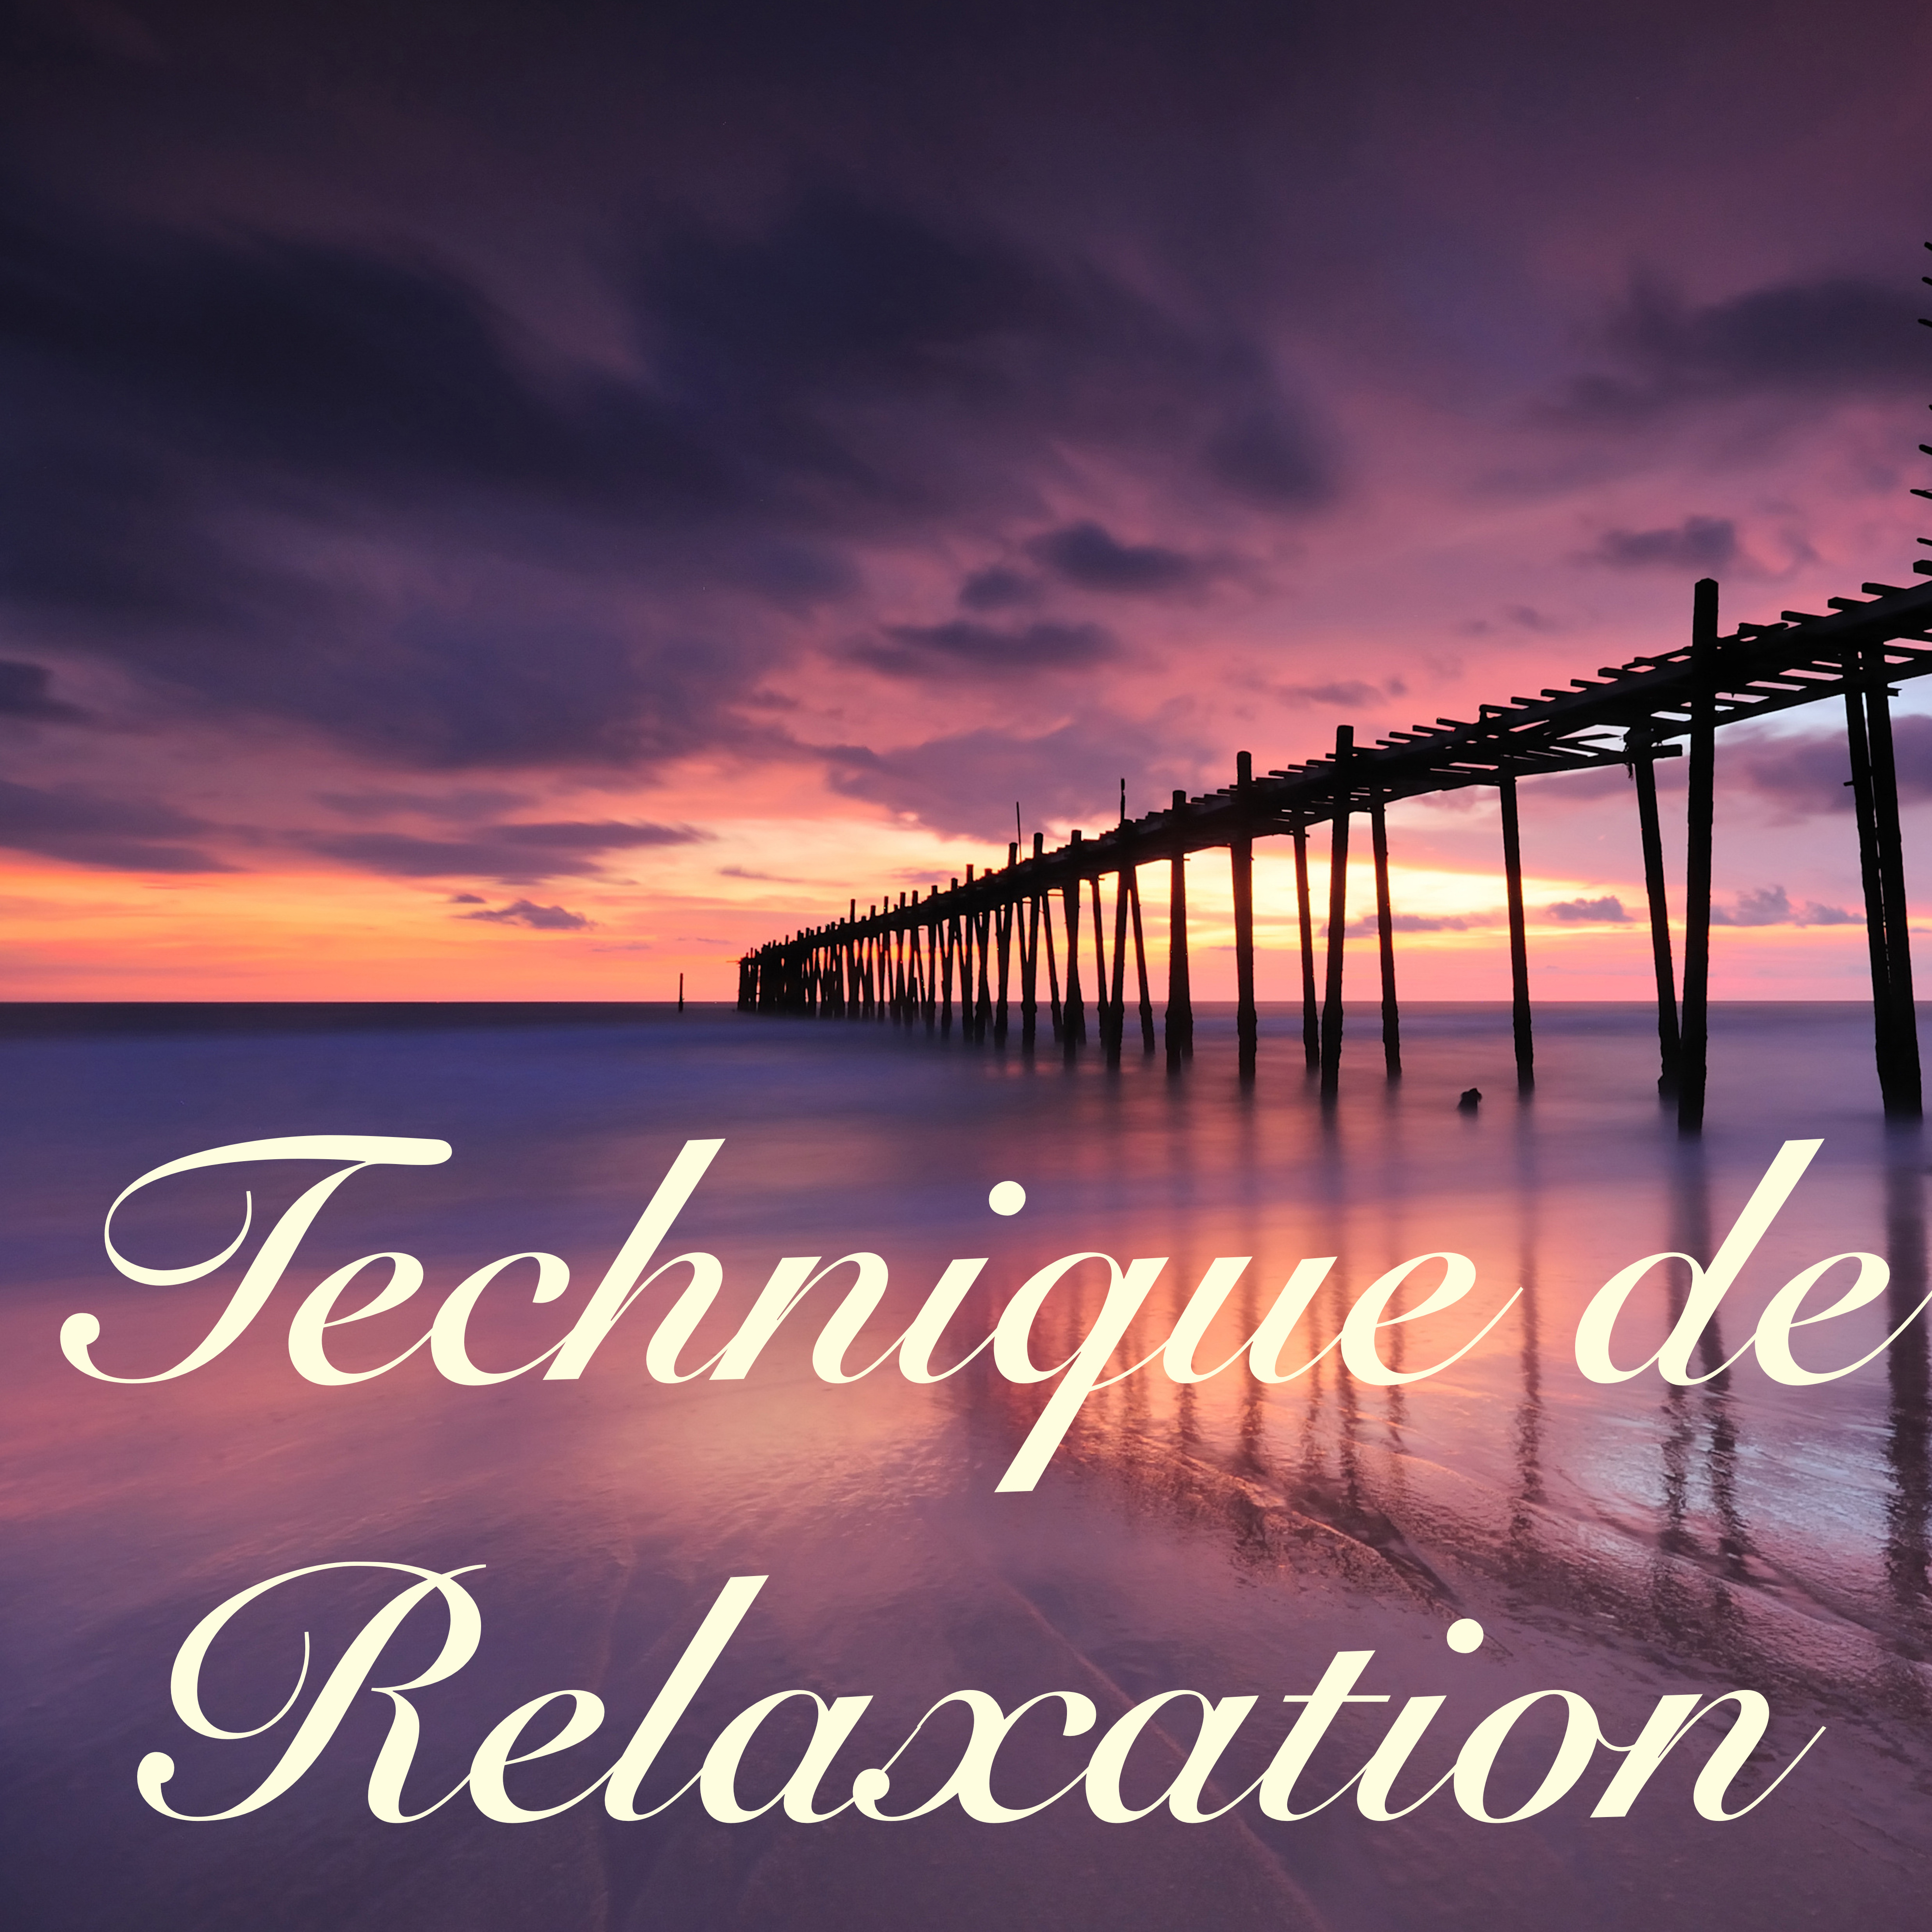 Technique de Relaxation: Me ditation Zen du Jour avec Musique Douce Piano et Fl te  Relaxant  Yoga, Bien tre, Sante